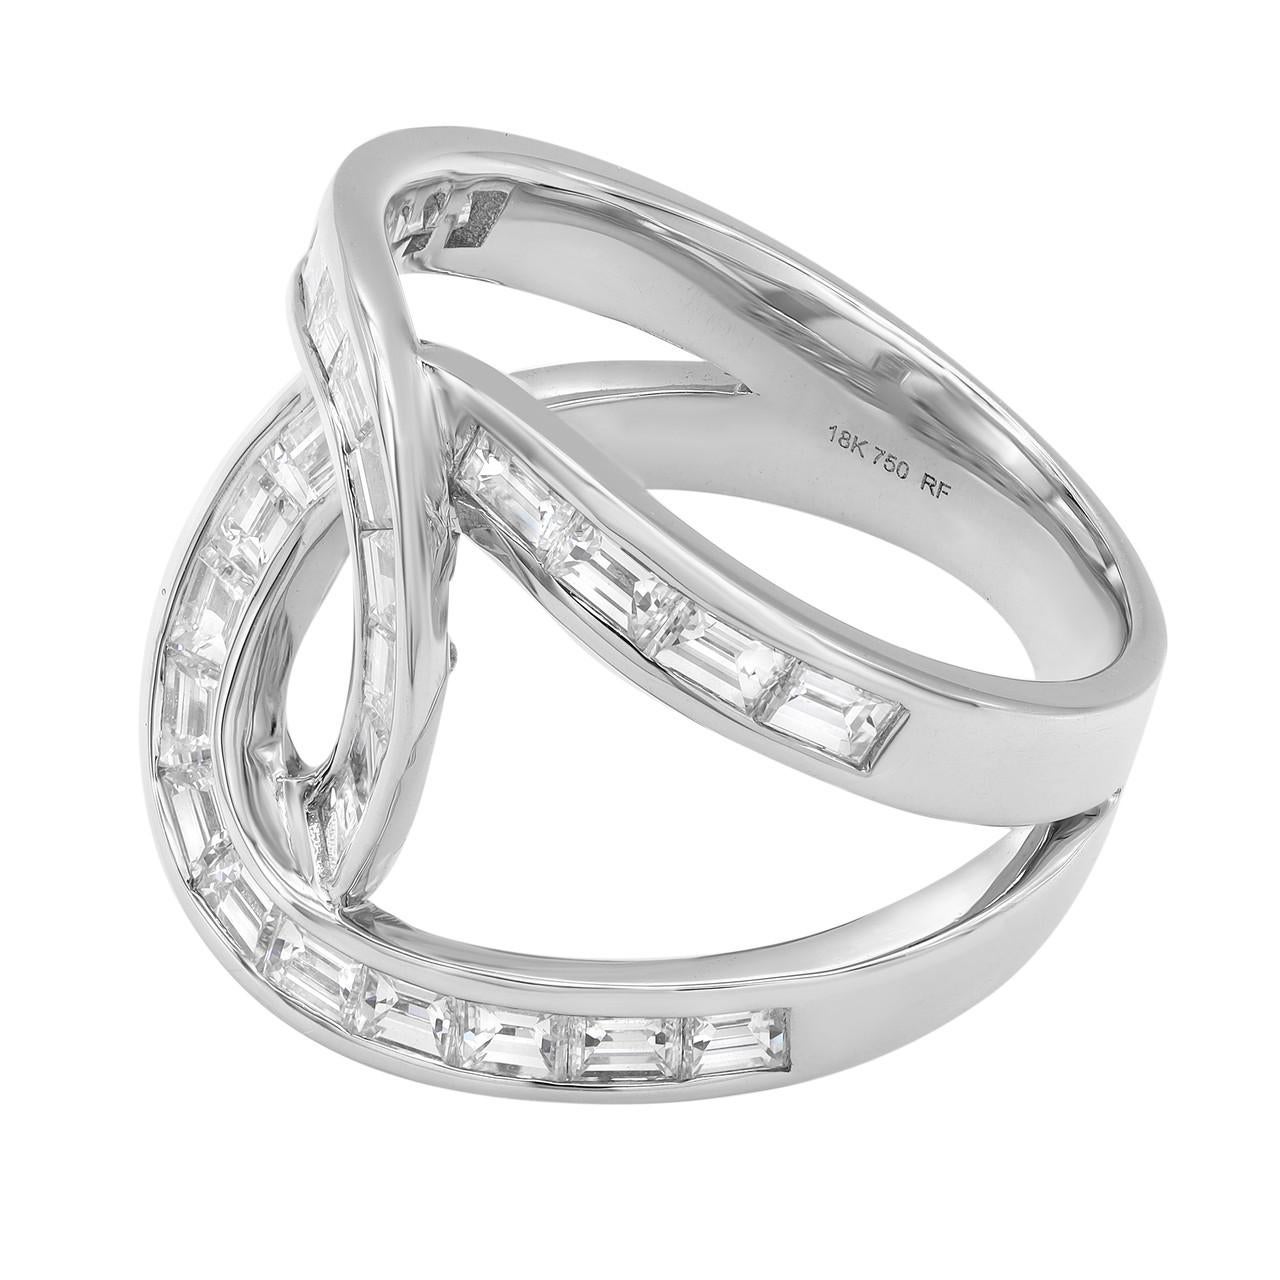 Setzen Sie ein mutiges Statement mit dem Diamant-Baguette-Interwoven Statement-Ring aus 18 Karat Weißgold. Dieser exquisite Ring zeigt die Schönheit moderner, spitz zulaufender Baguettes in einem faszinierenden, verschlungenen Design. Dieser mit